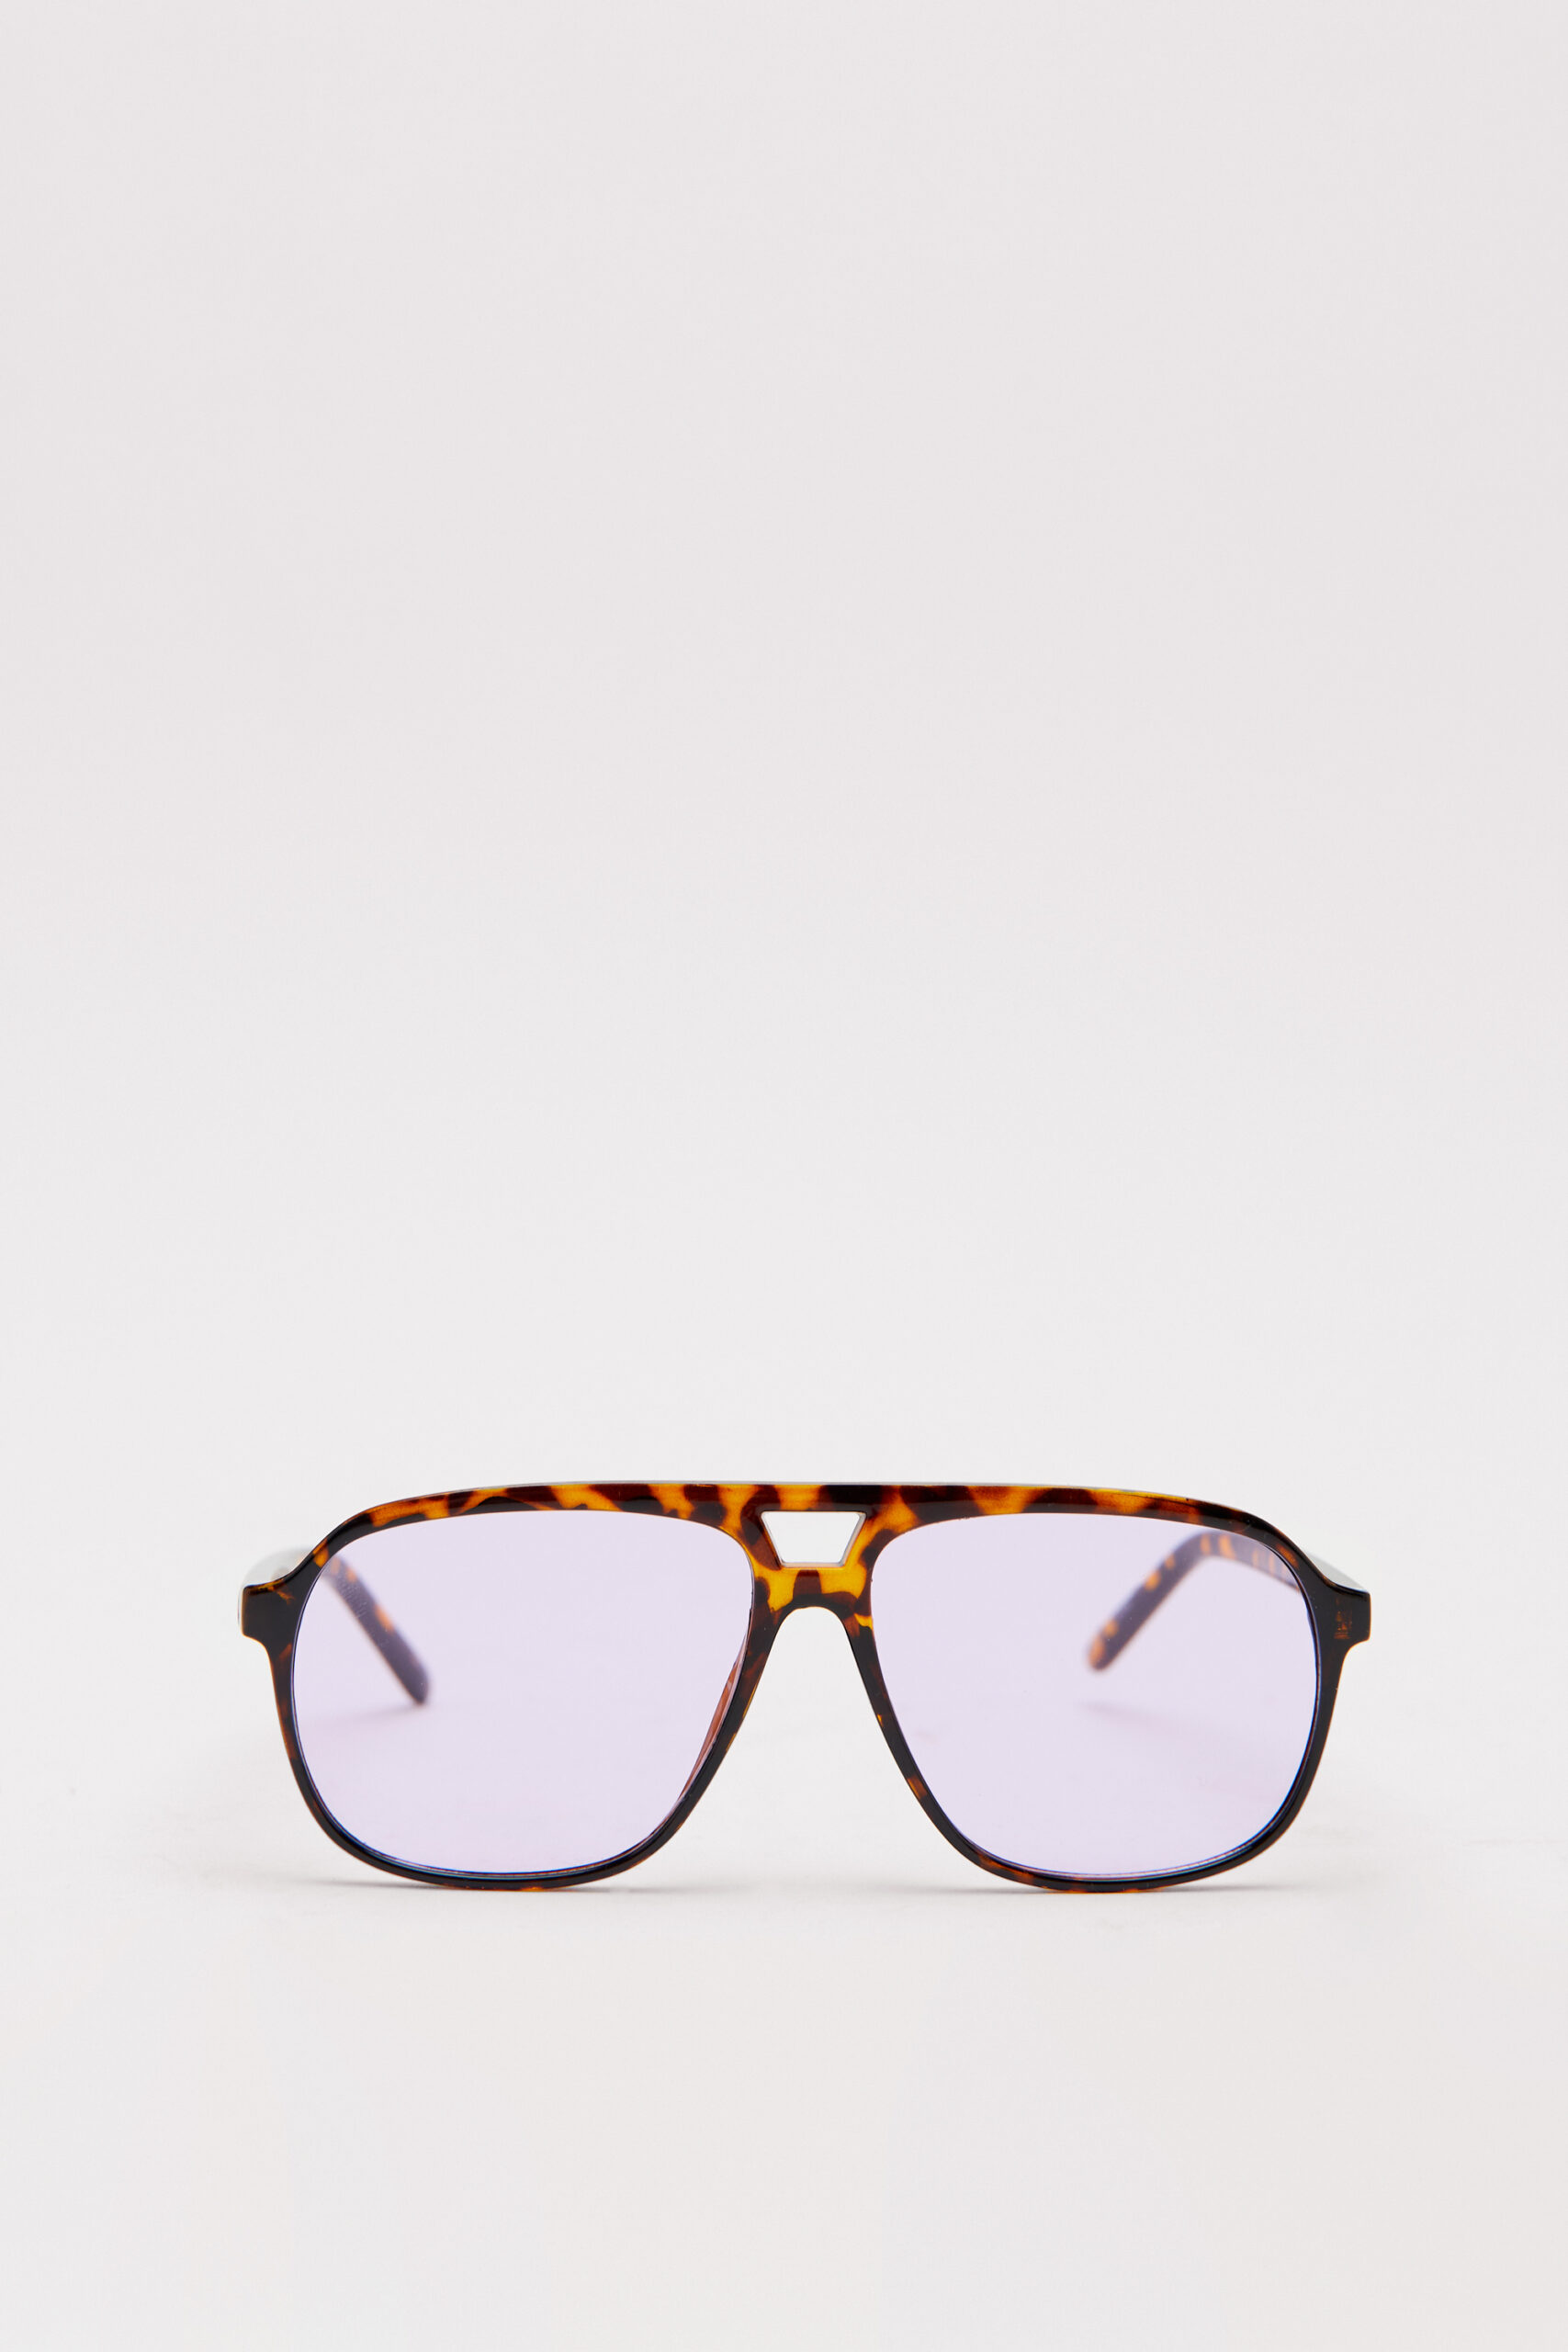 Colored Lens Tortoise Shell Aviator Sunglasses